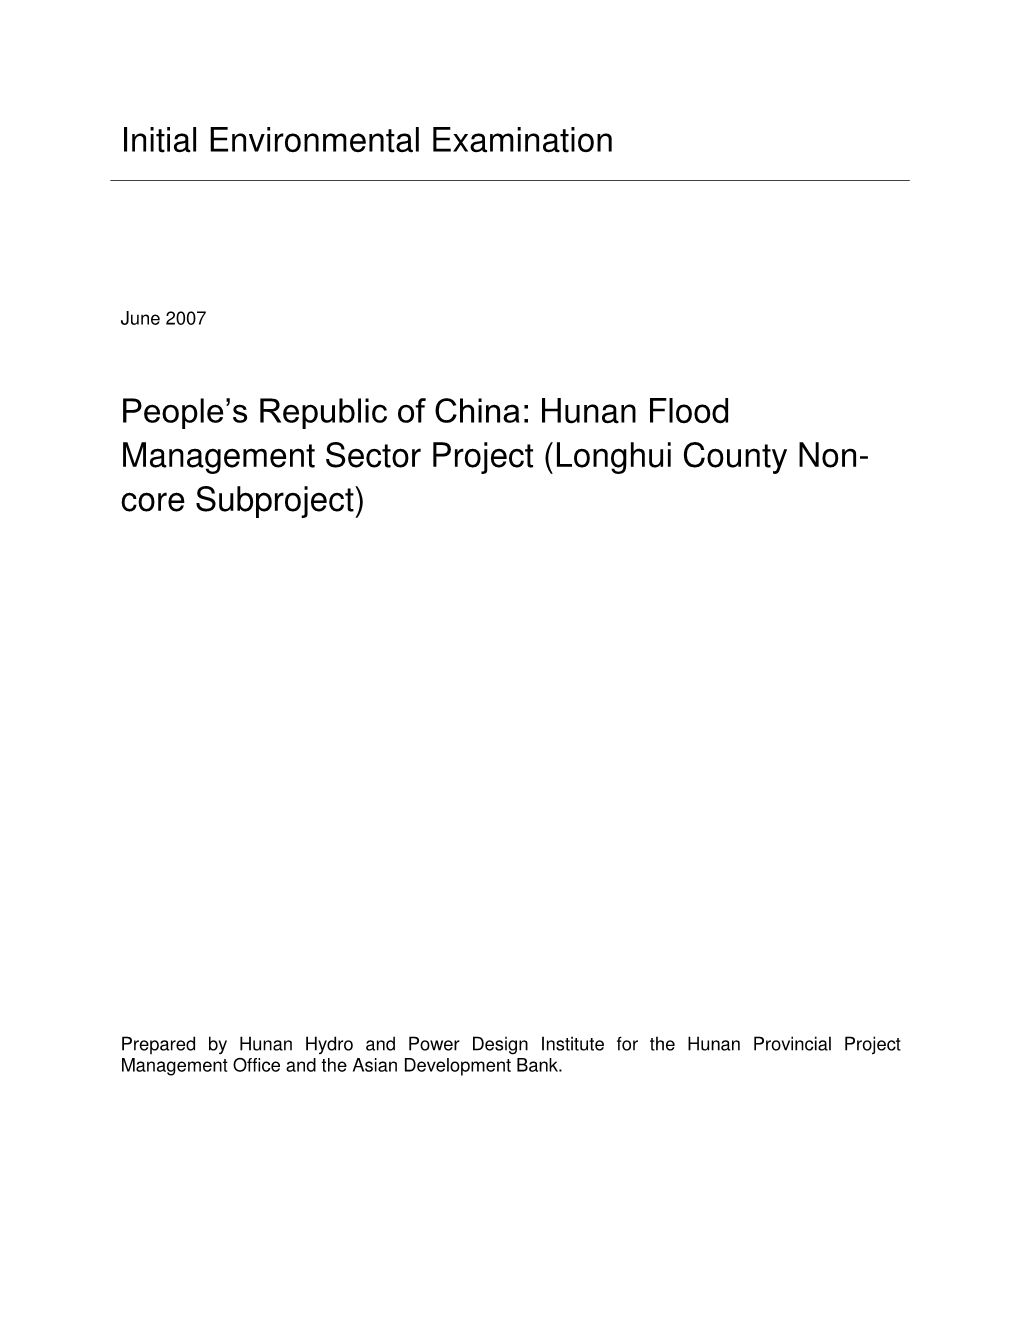 Initial Environmental Examination People's Republic of China: Hunan